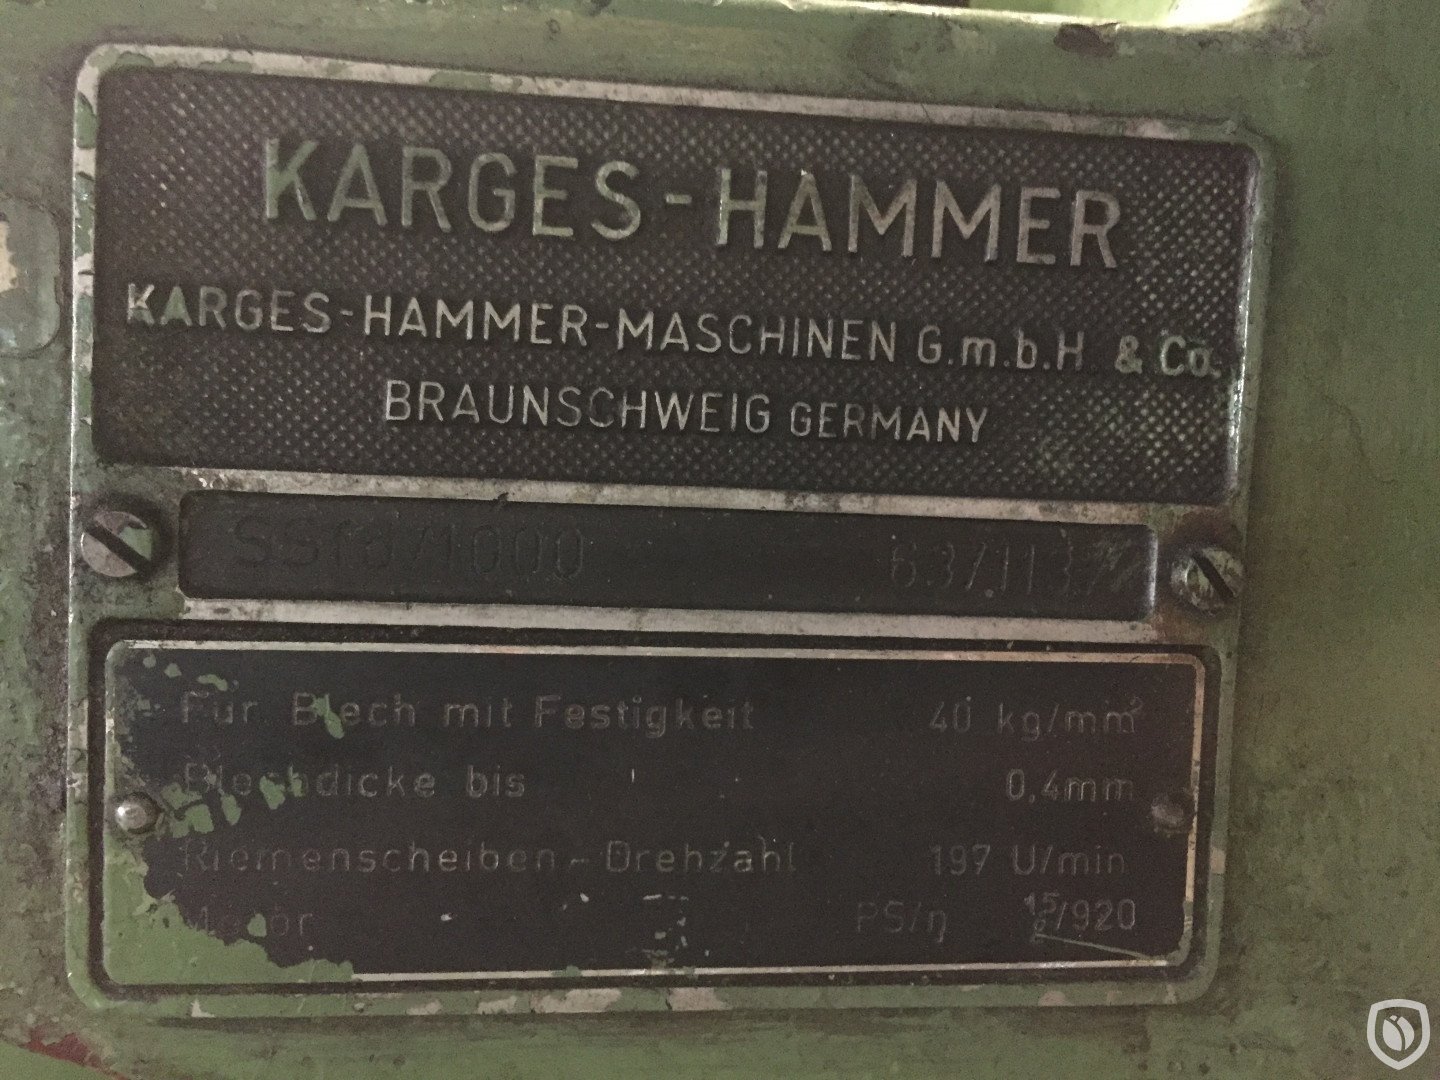 Karges Hammer SSfd 1000